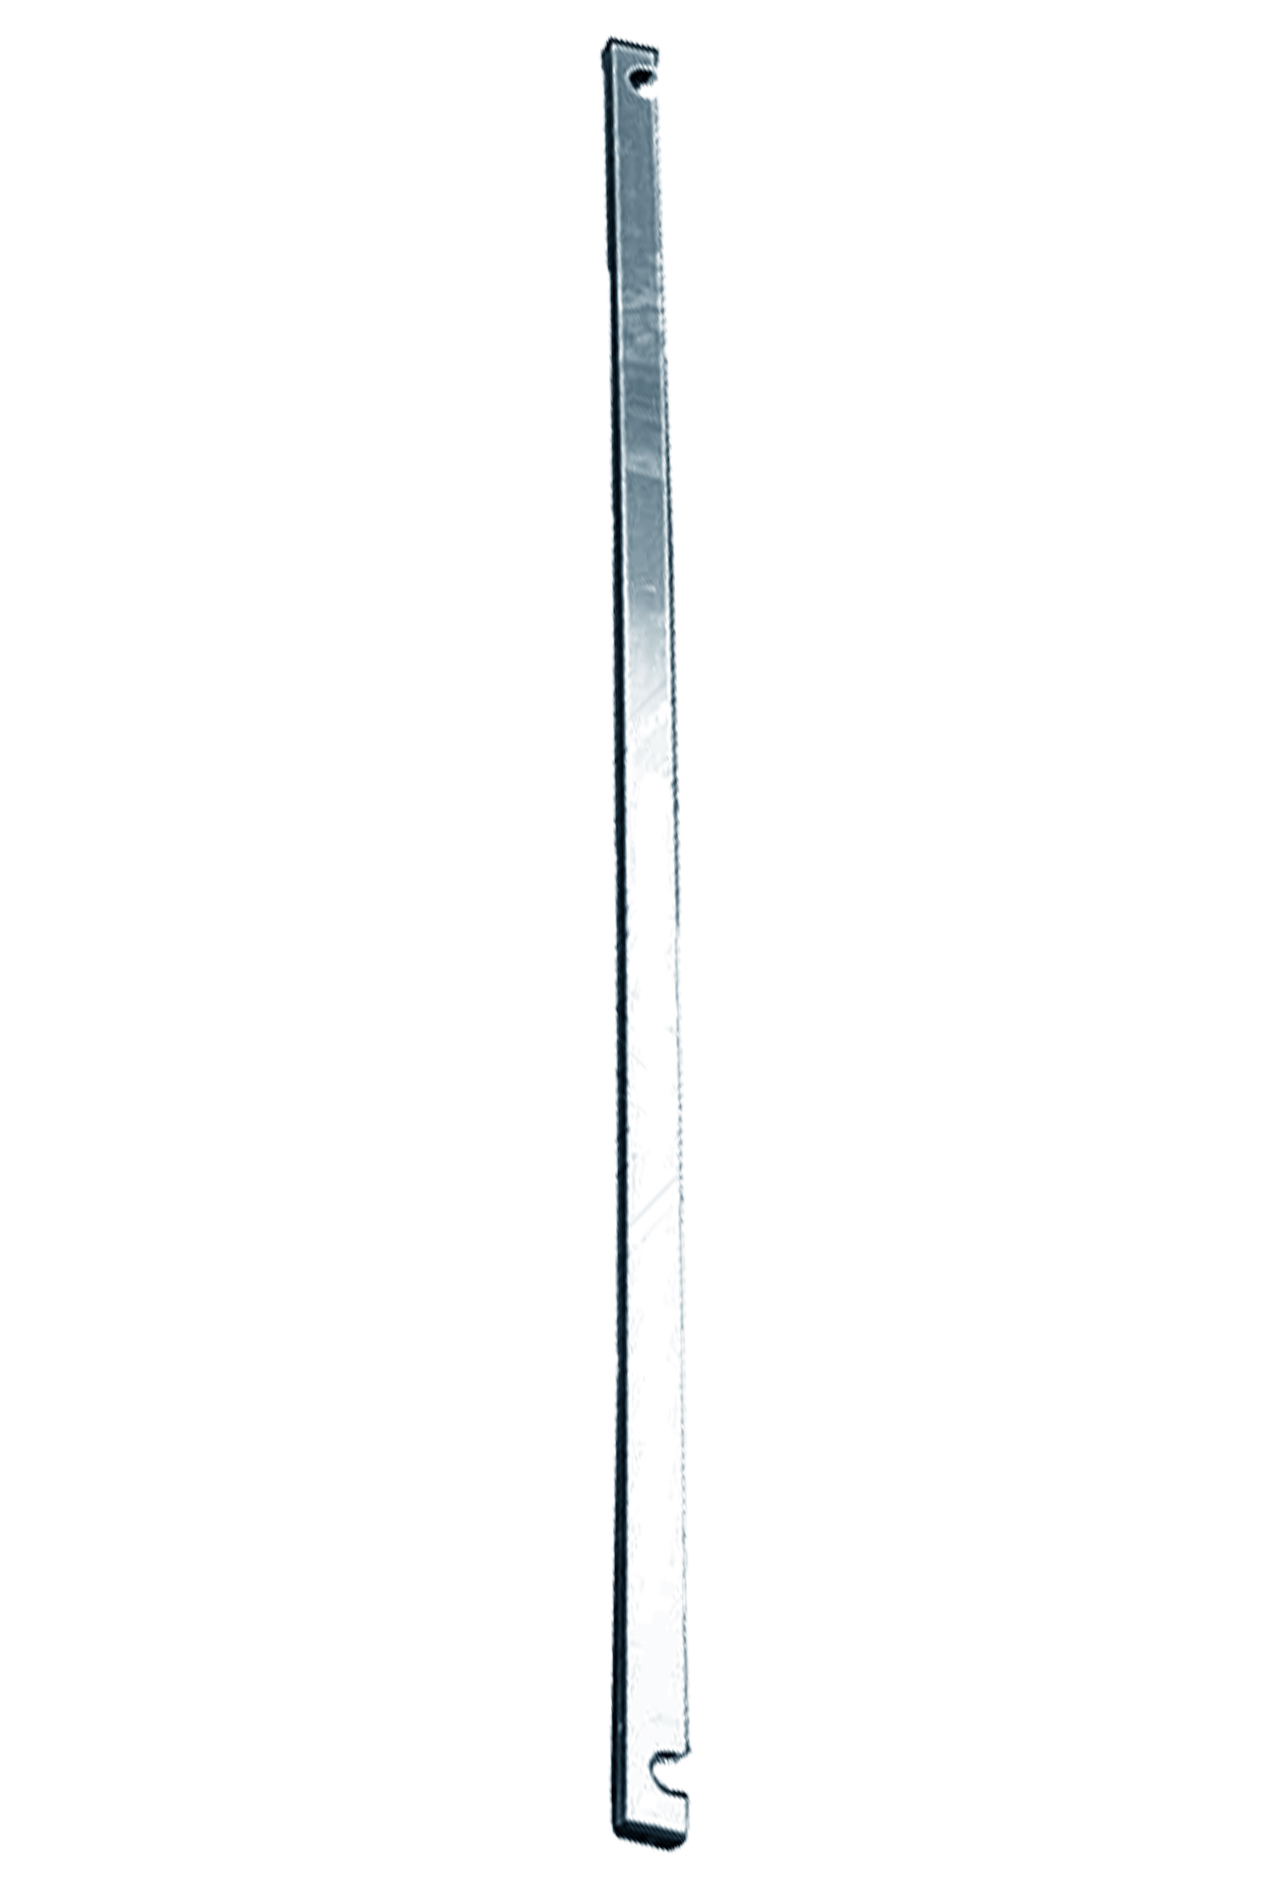 Дополнительное изображение Stabilo серии 1000 рабочая высота 13,2 м, размер площадки (3x0.75 м)